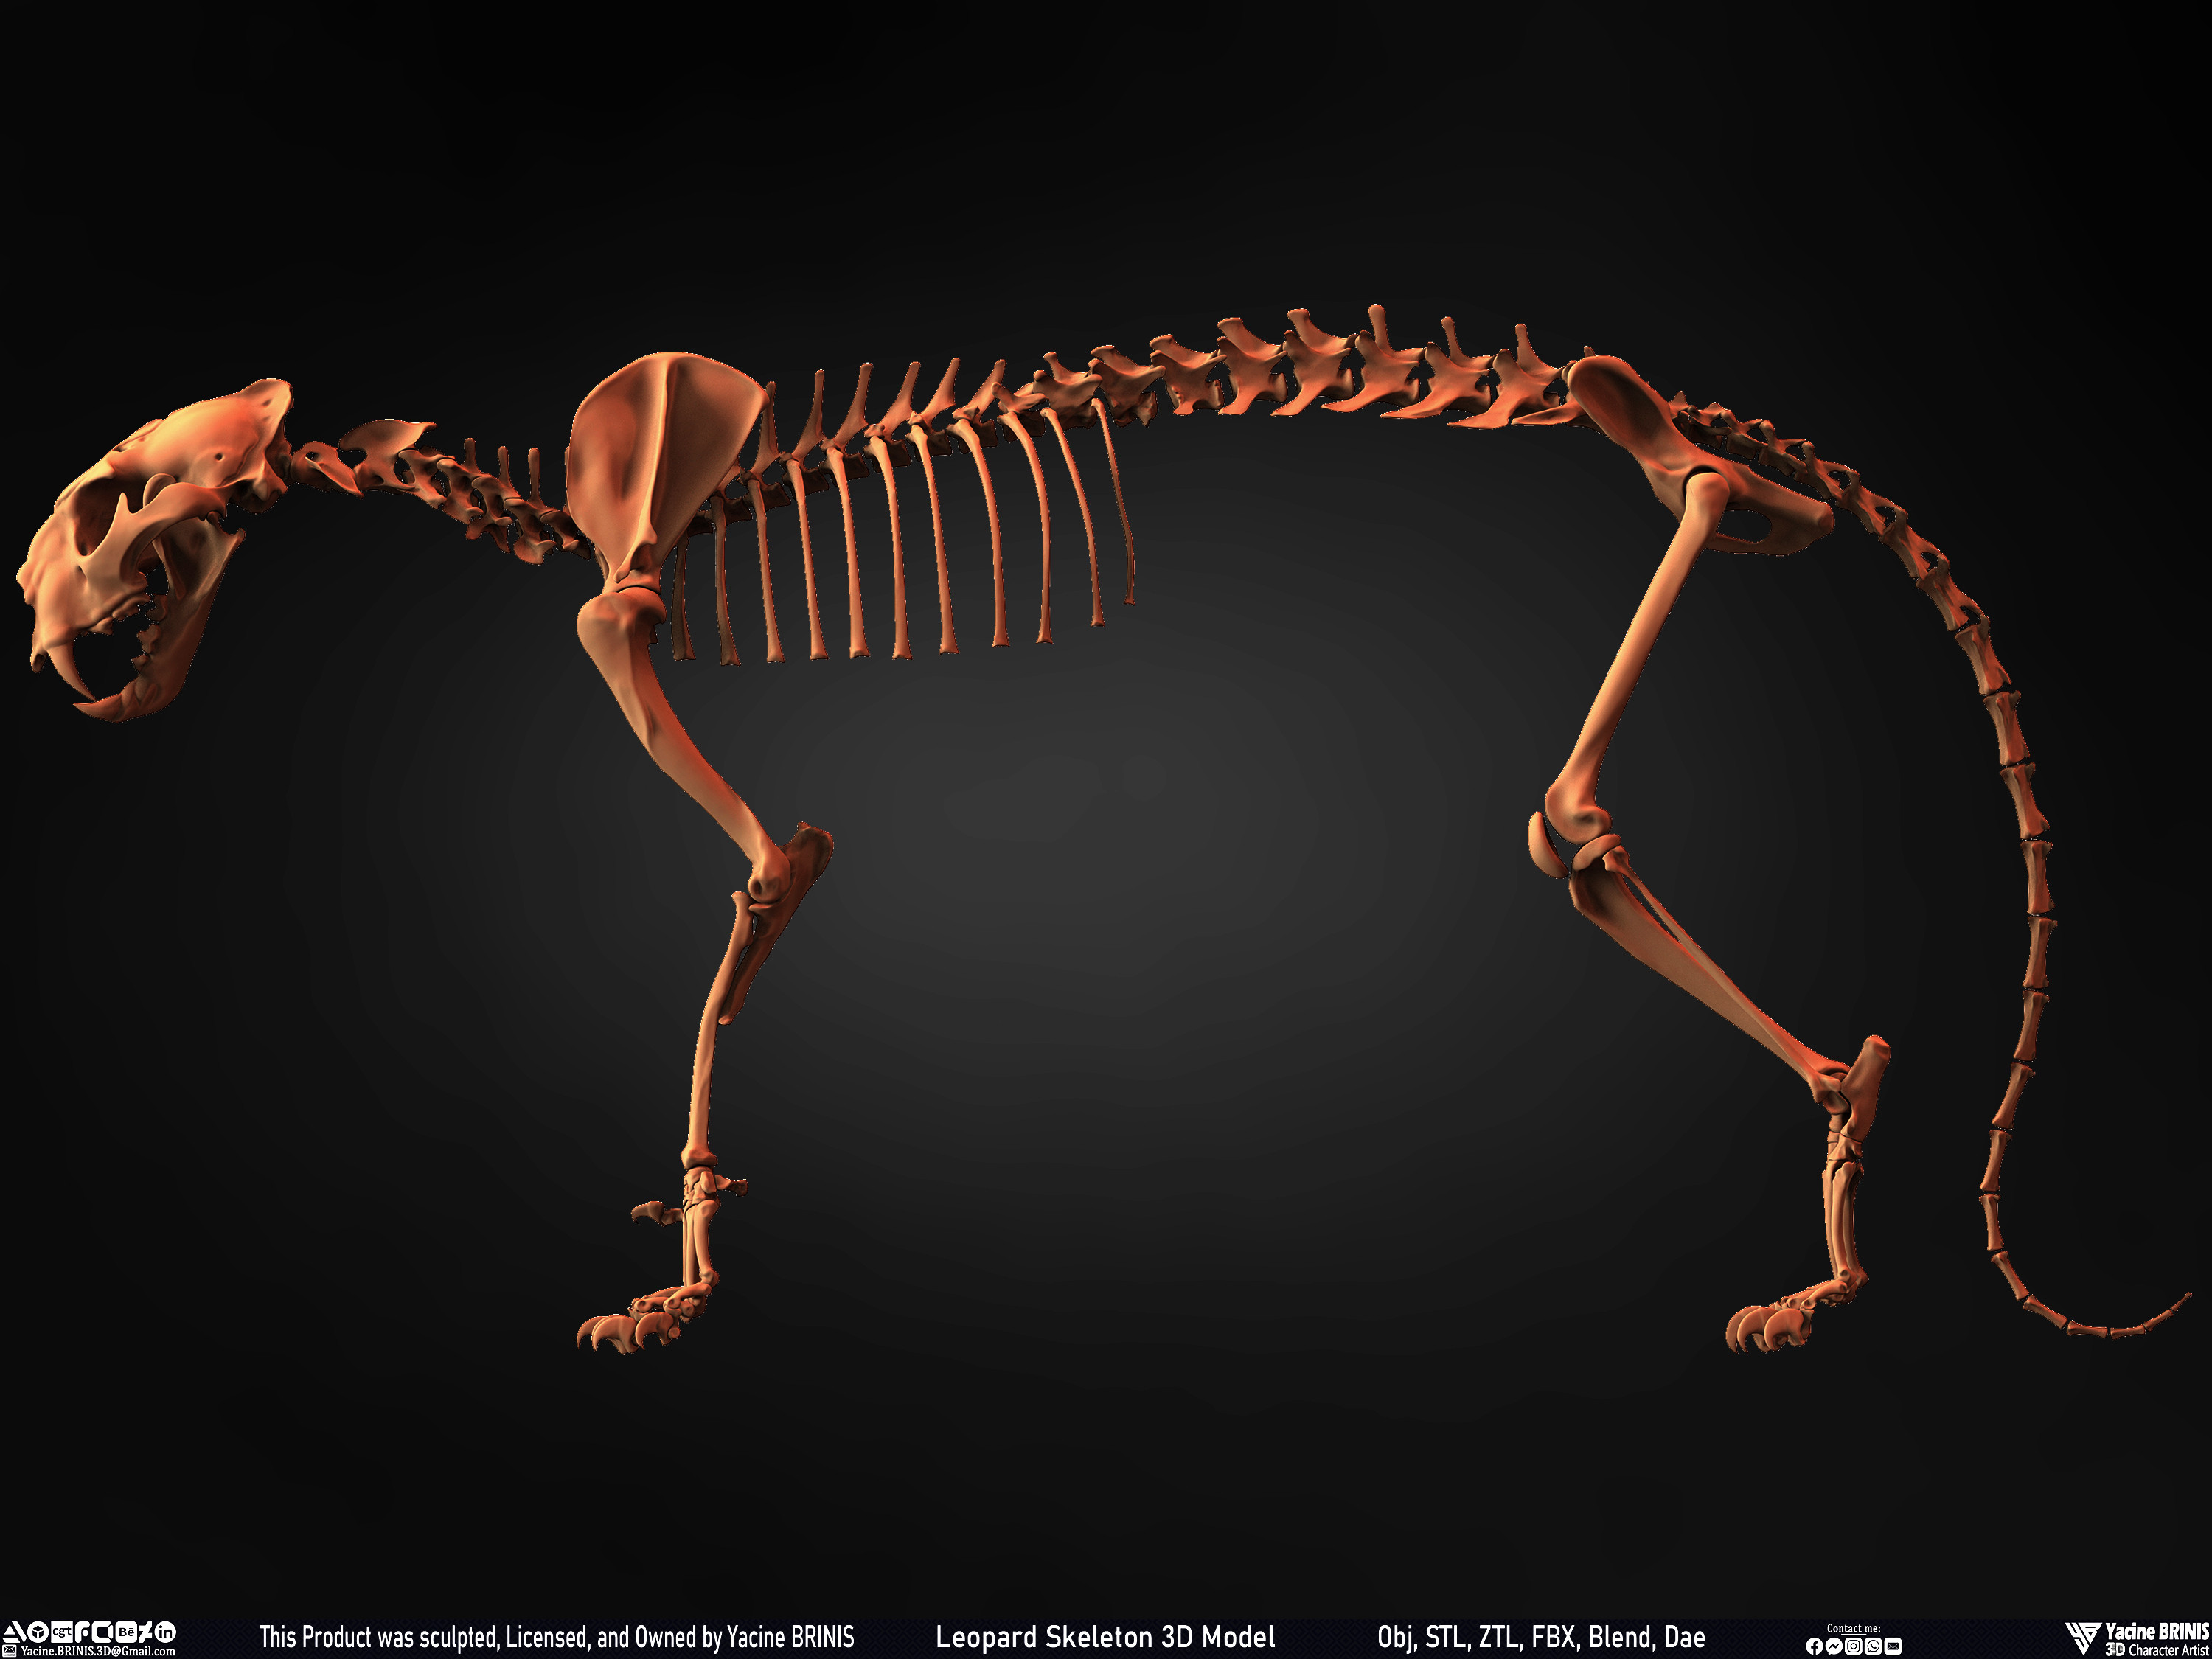 Leopard Skeleton 3D Model Sculpted By Yacine BRINIS 011